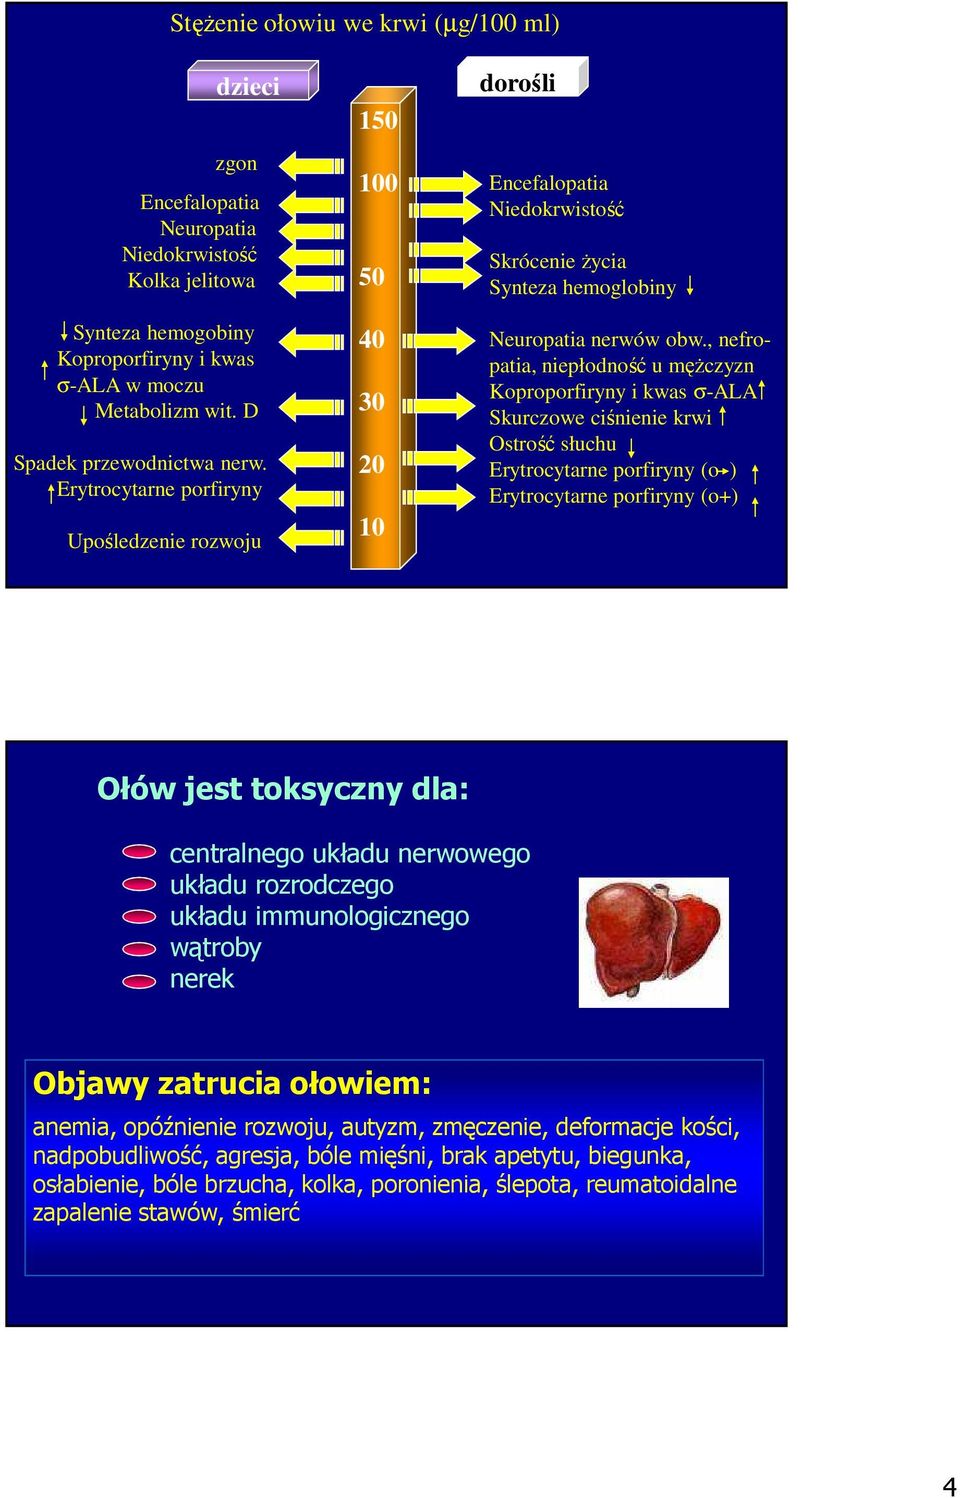 , nefropatia, niepłodność u męŝczyzn Koproporfiryny i kwas σ-ala Skurczowe ciśnienie krwi Ostrość słuchu Erytrocytarne porfiryny (o ) Erytrocytarne porfiryny (o+) Ołów jest toksyczny dla: centralnego